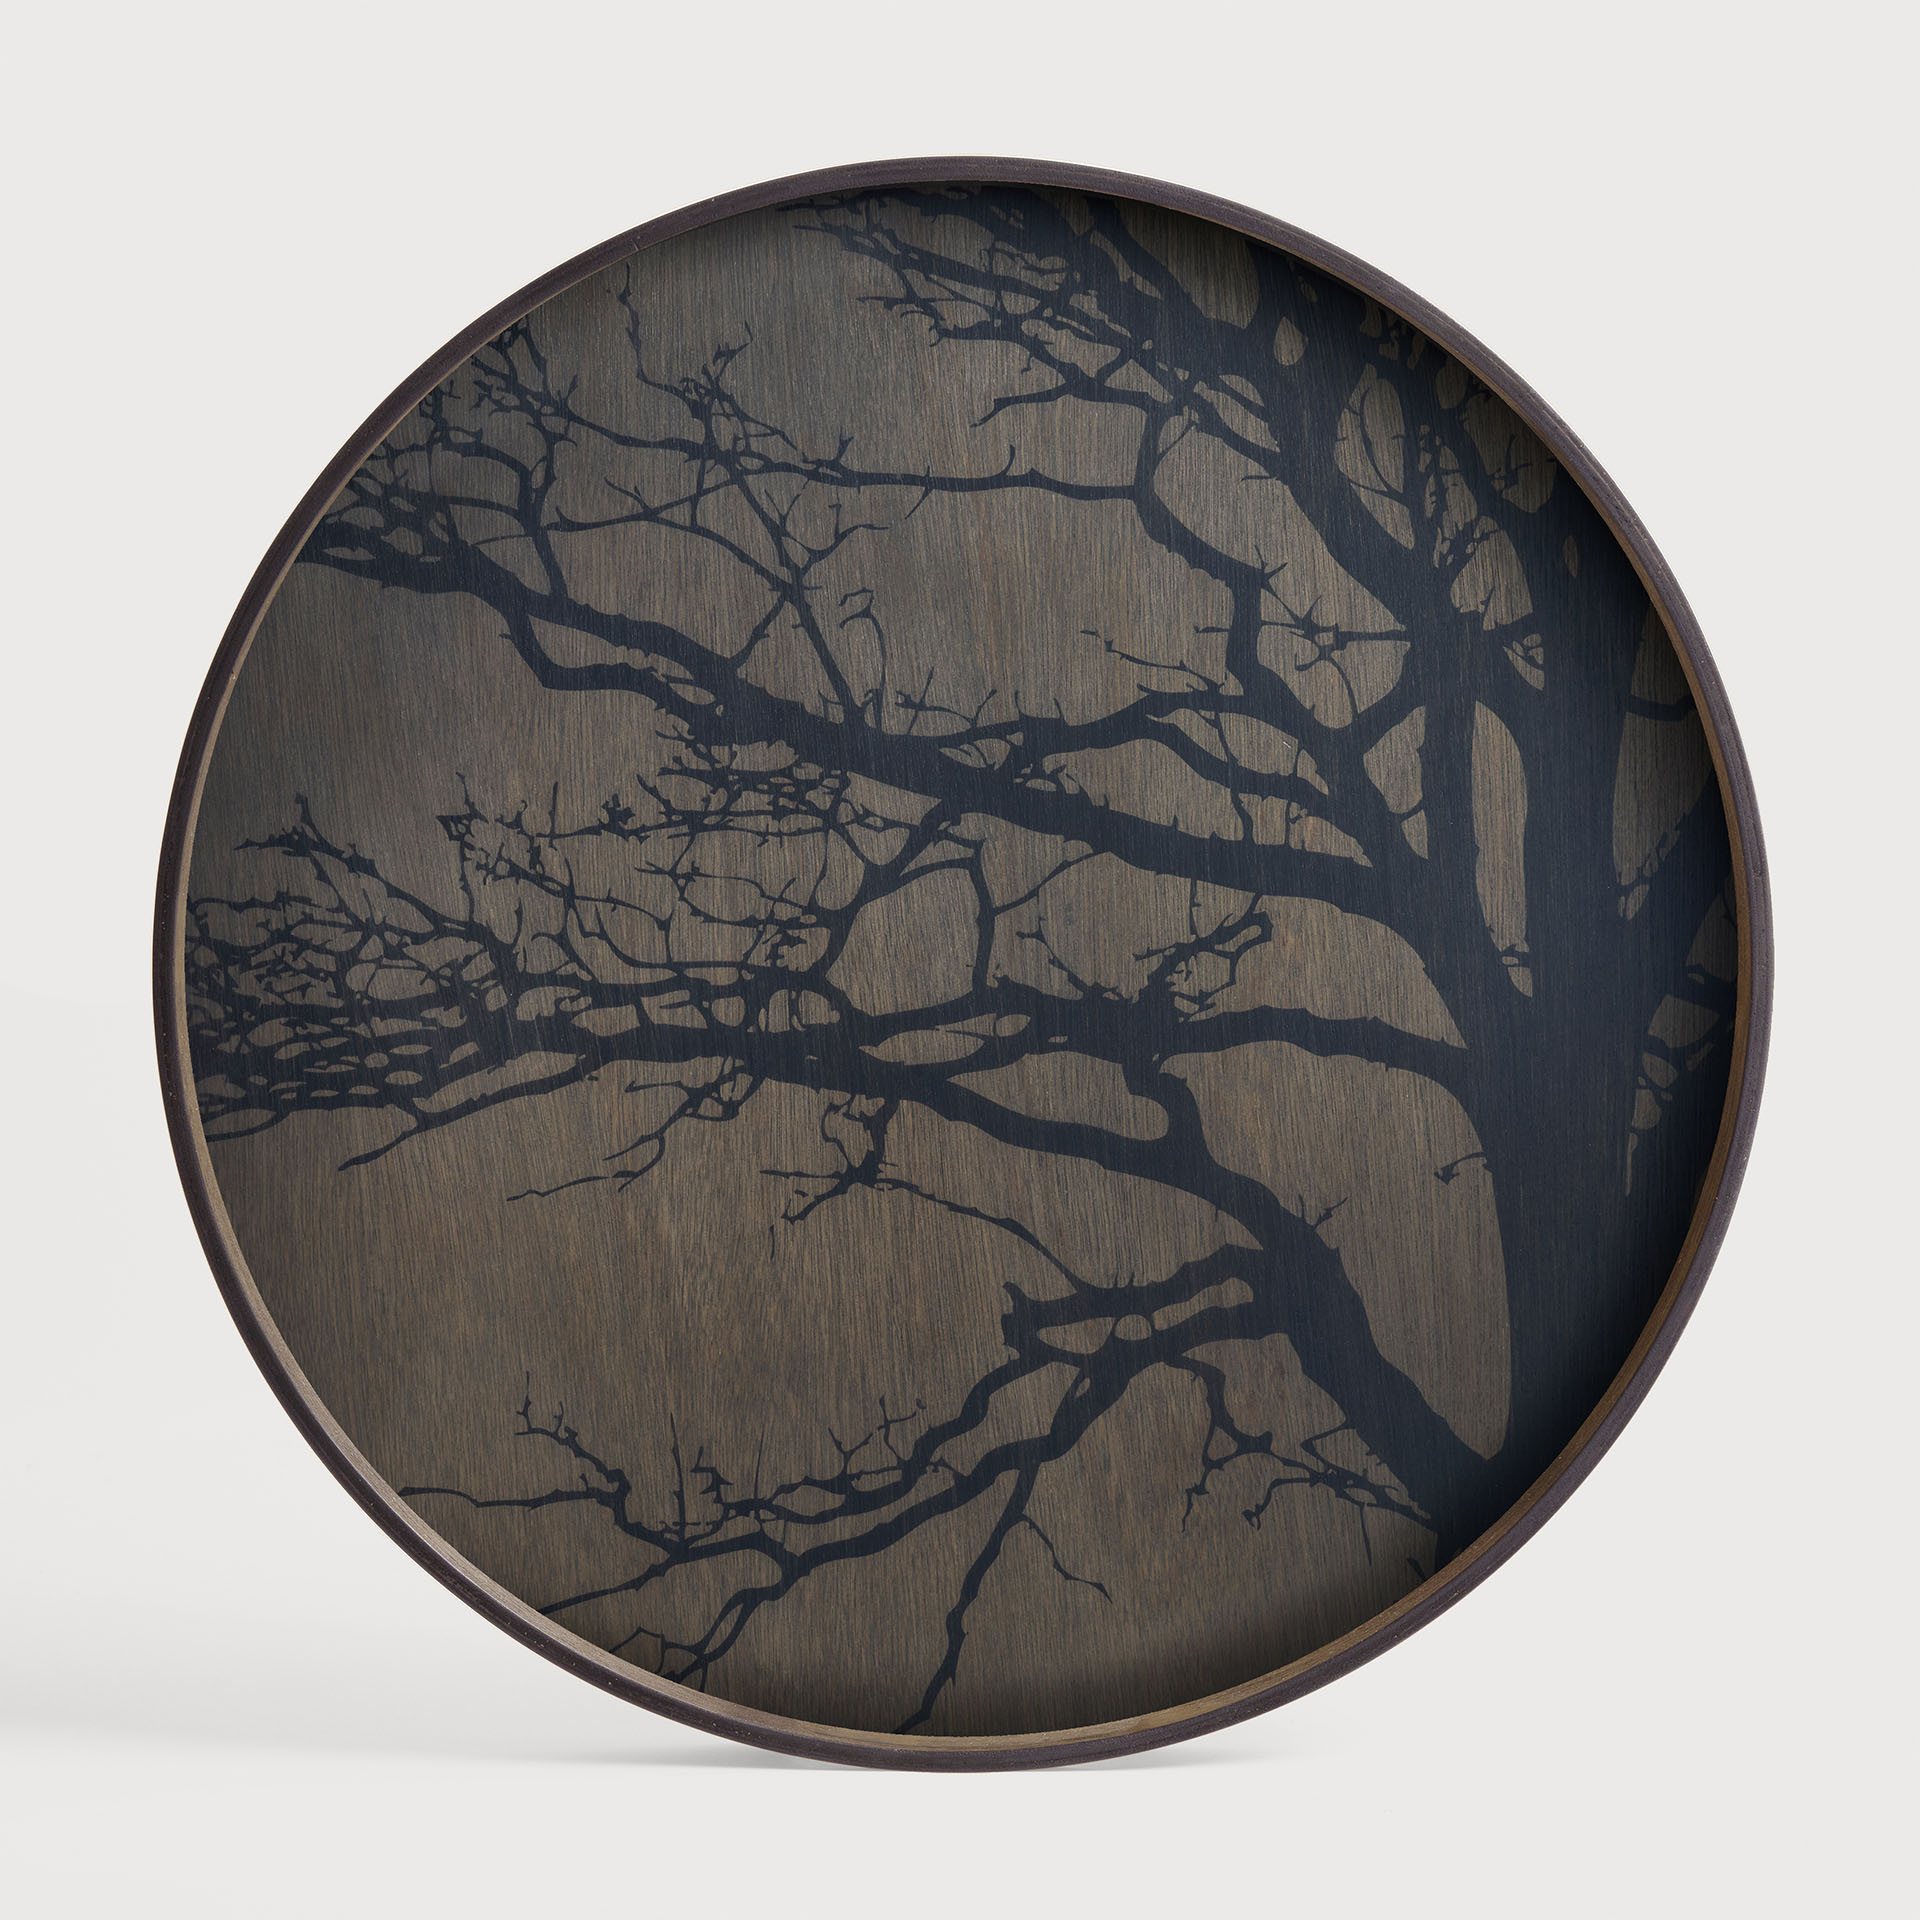 [20404] Black Tree wooden tray